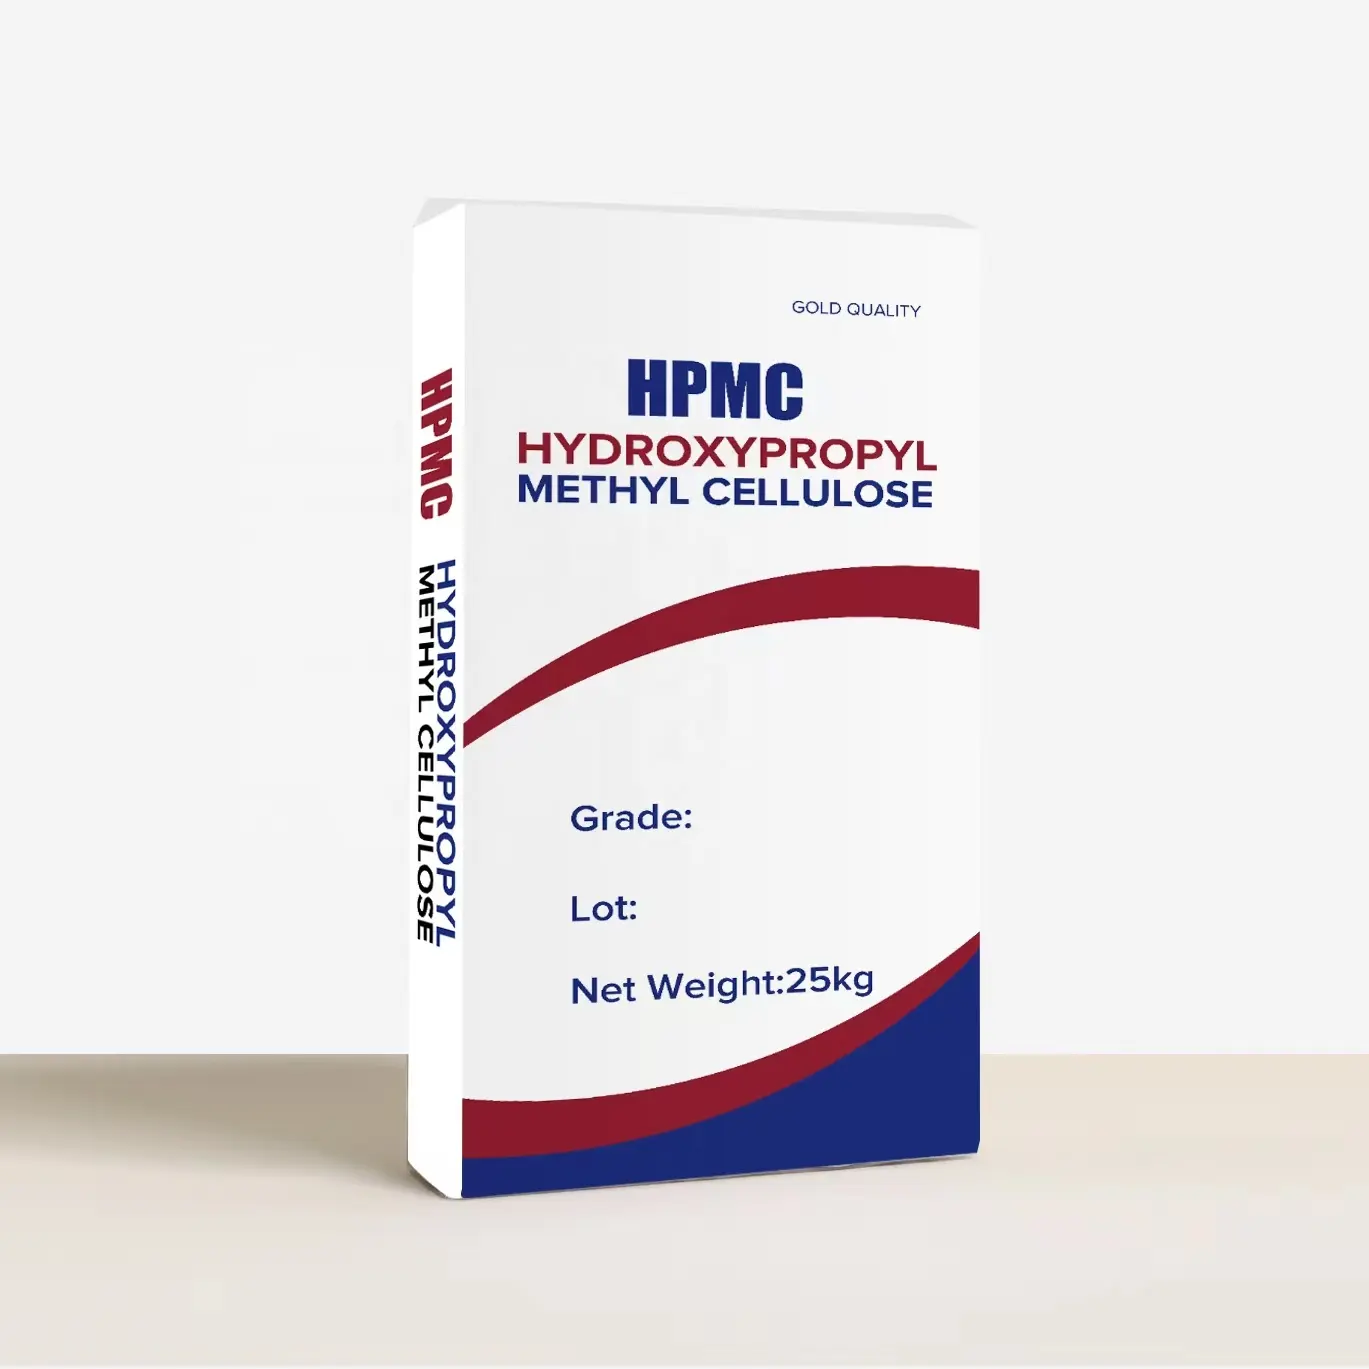 Chemisches Hilfsmittel HPMC/HEMC/MHEC-Hydroxy propyl methyl cellulose chemikalien für die industrielle Produktion